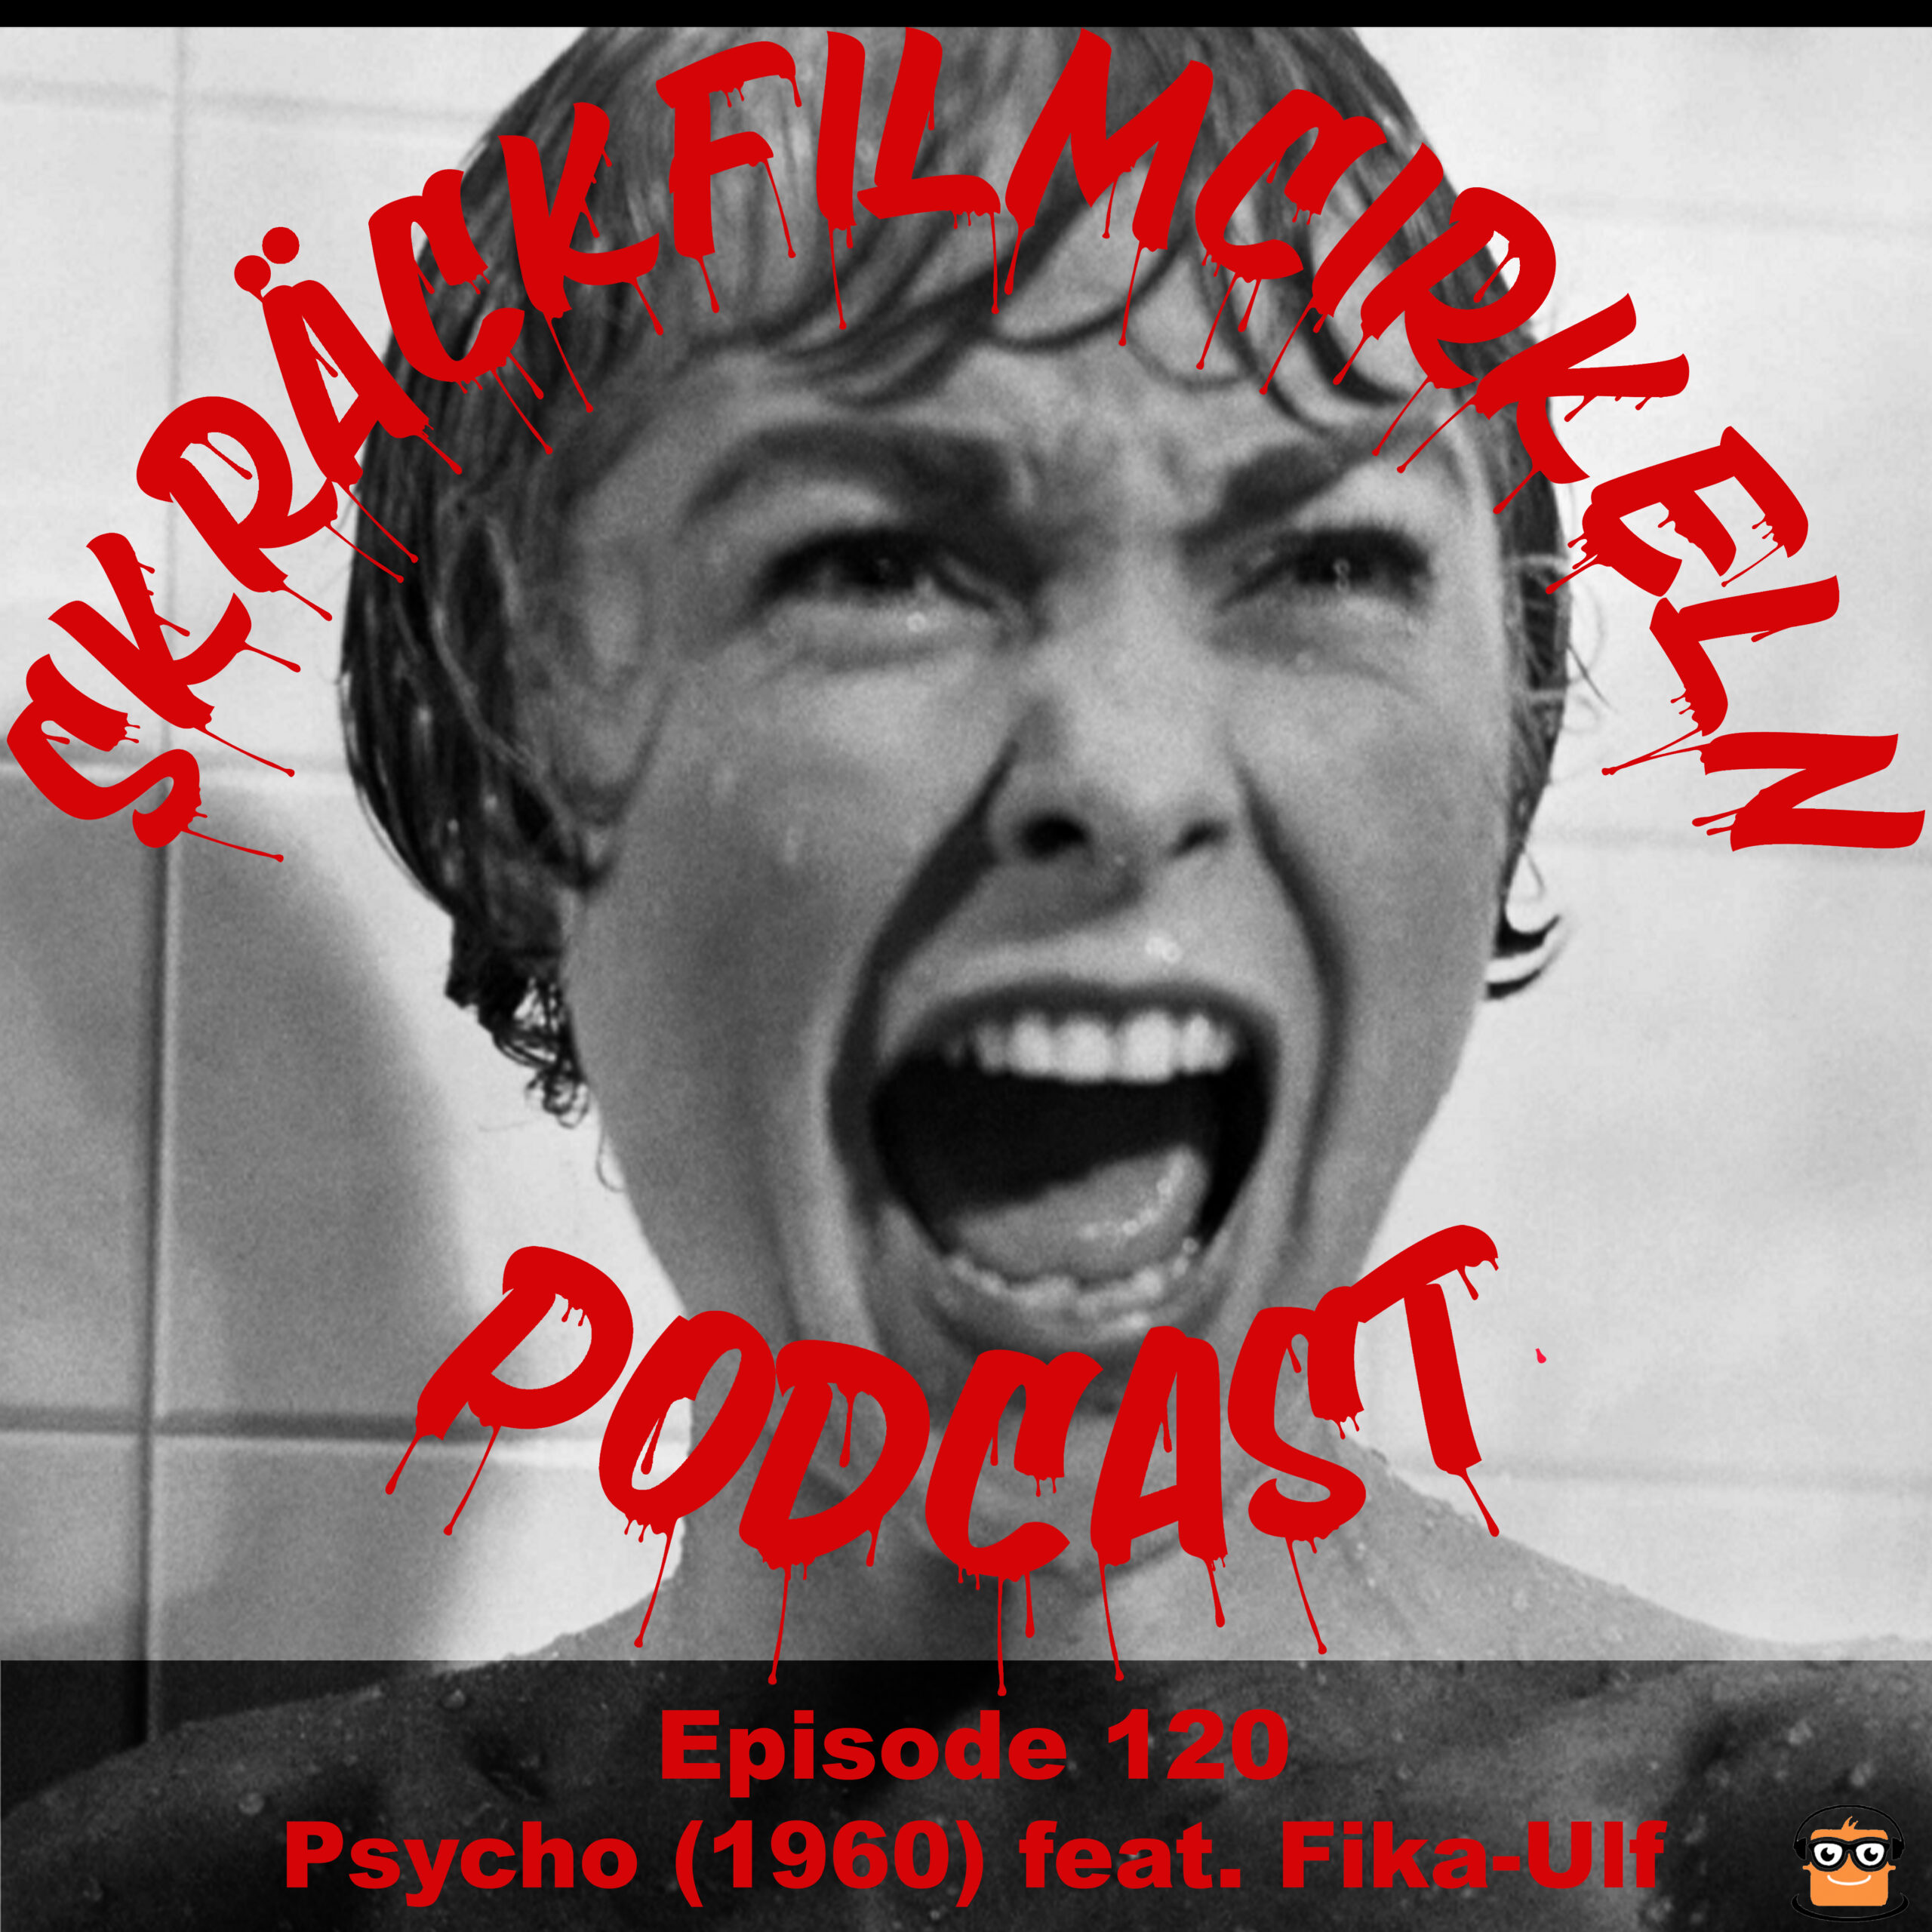 Episode 120 – Psycho (1960) feat. Fika-Ulf